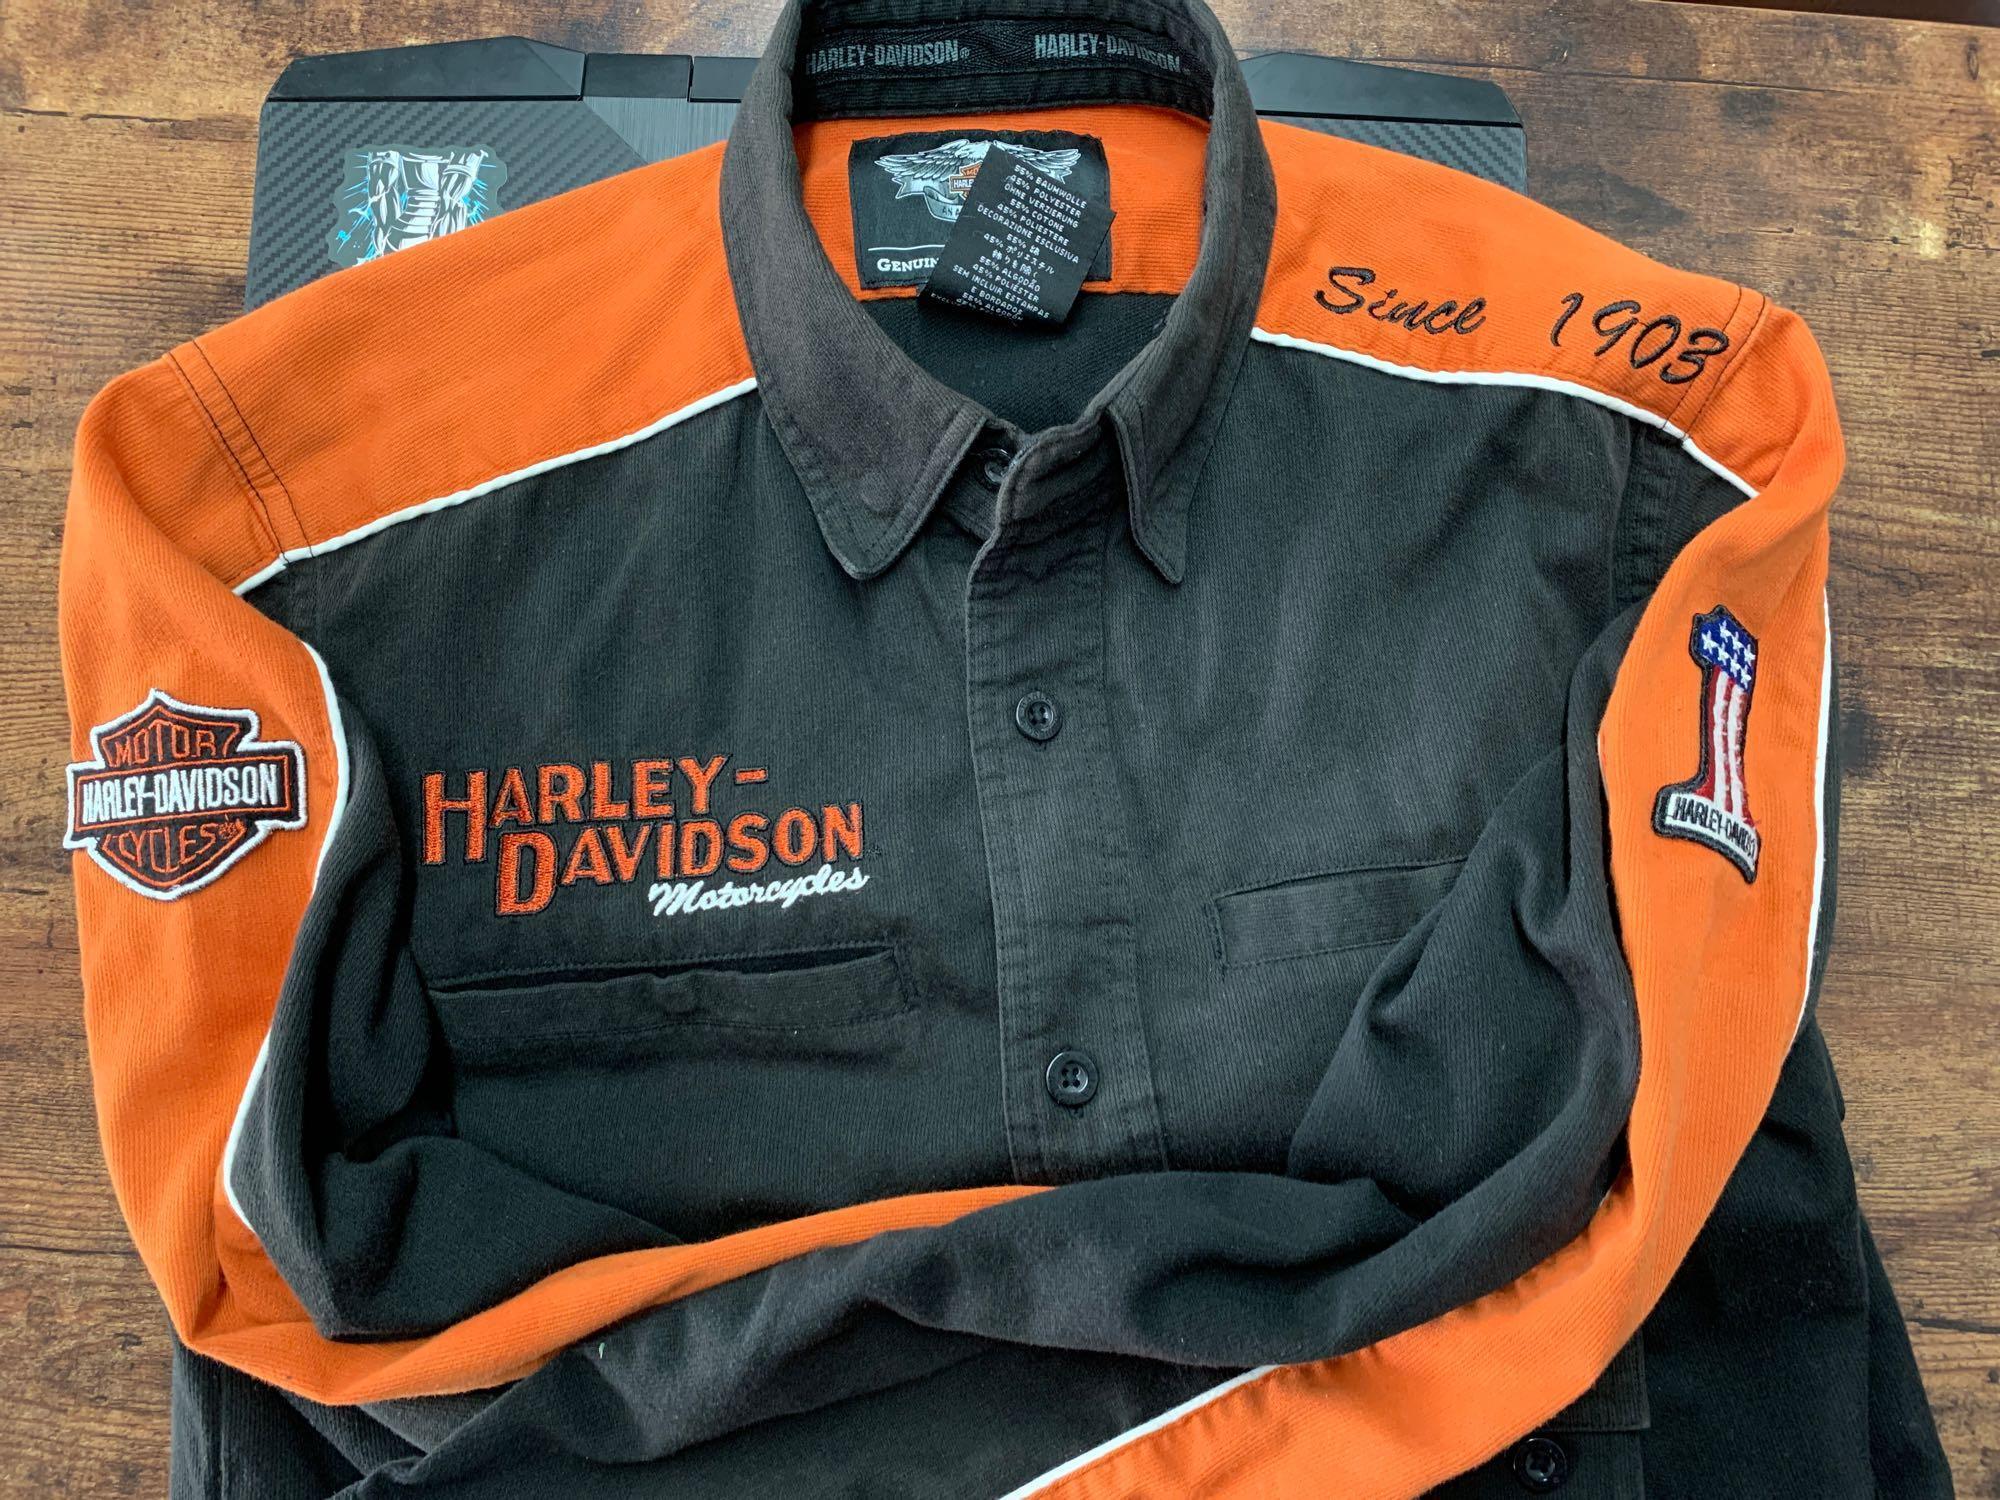 Harley Davidson pocket knife and Harley Davidson sweater...